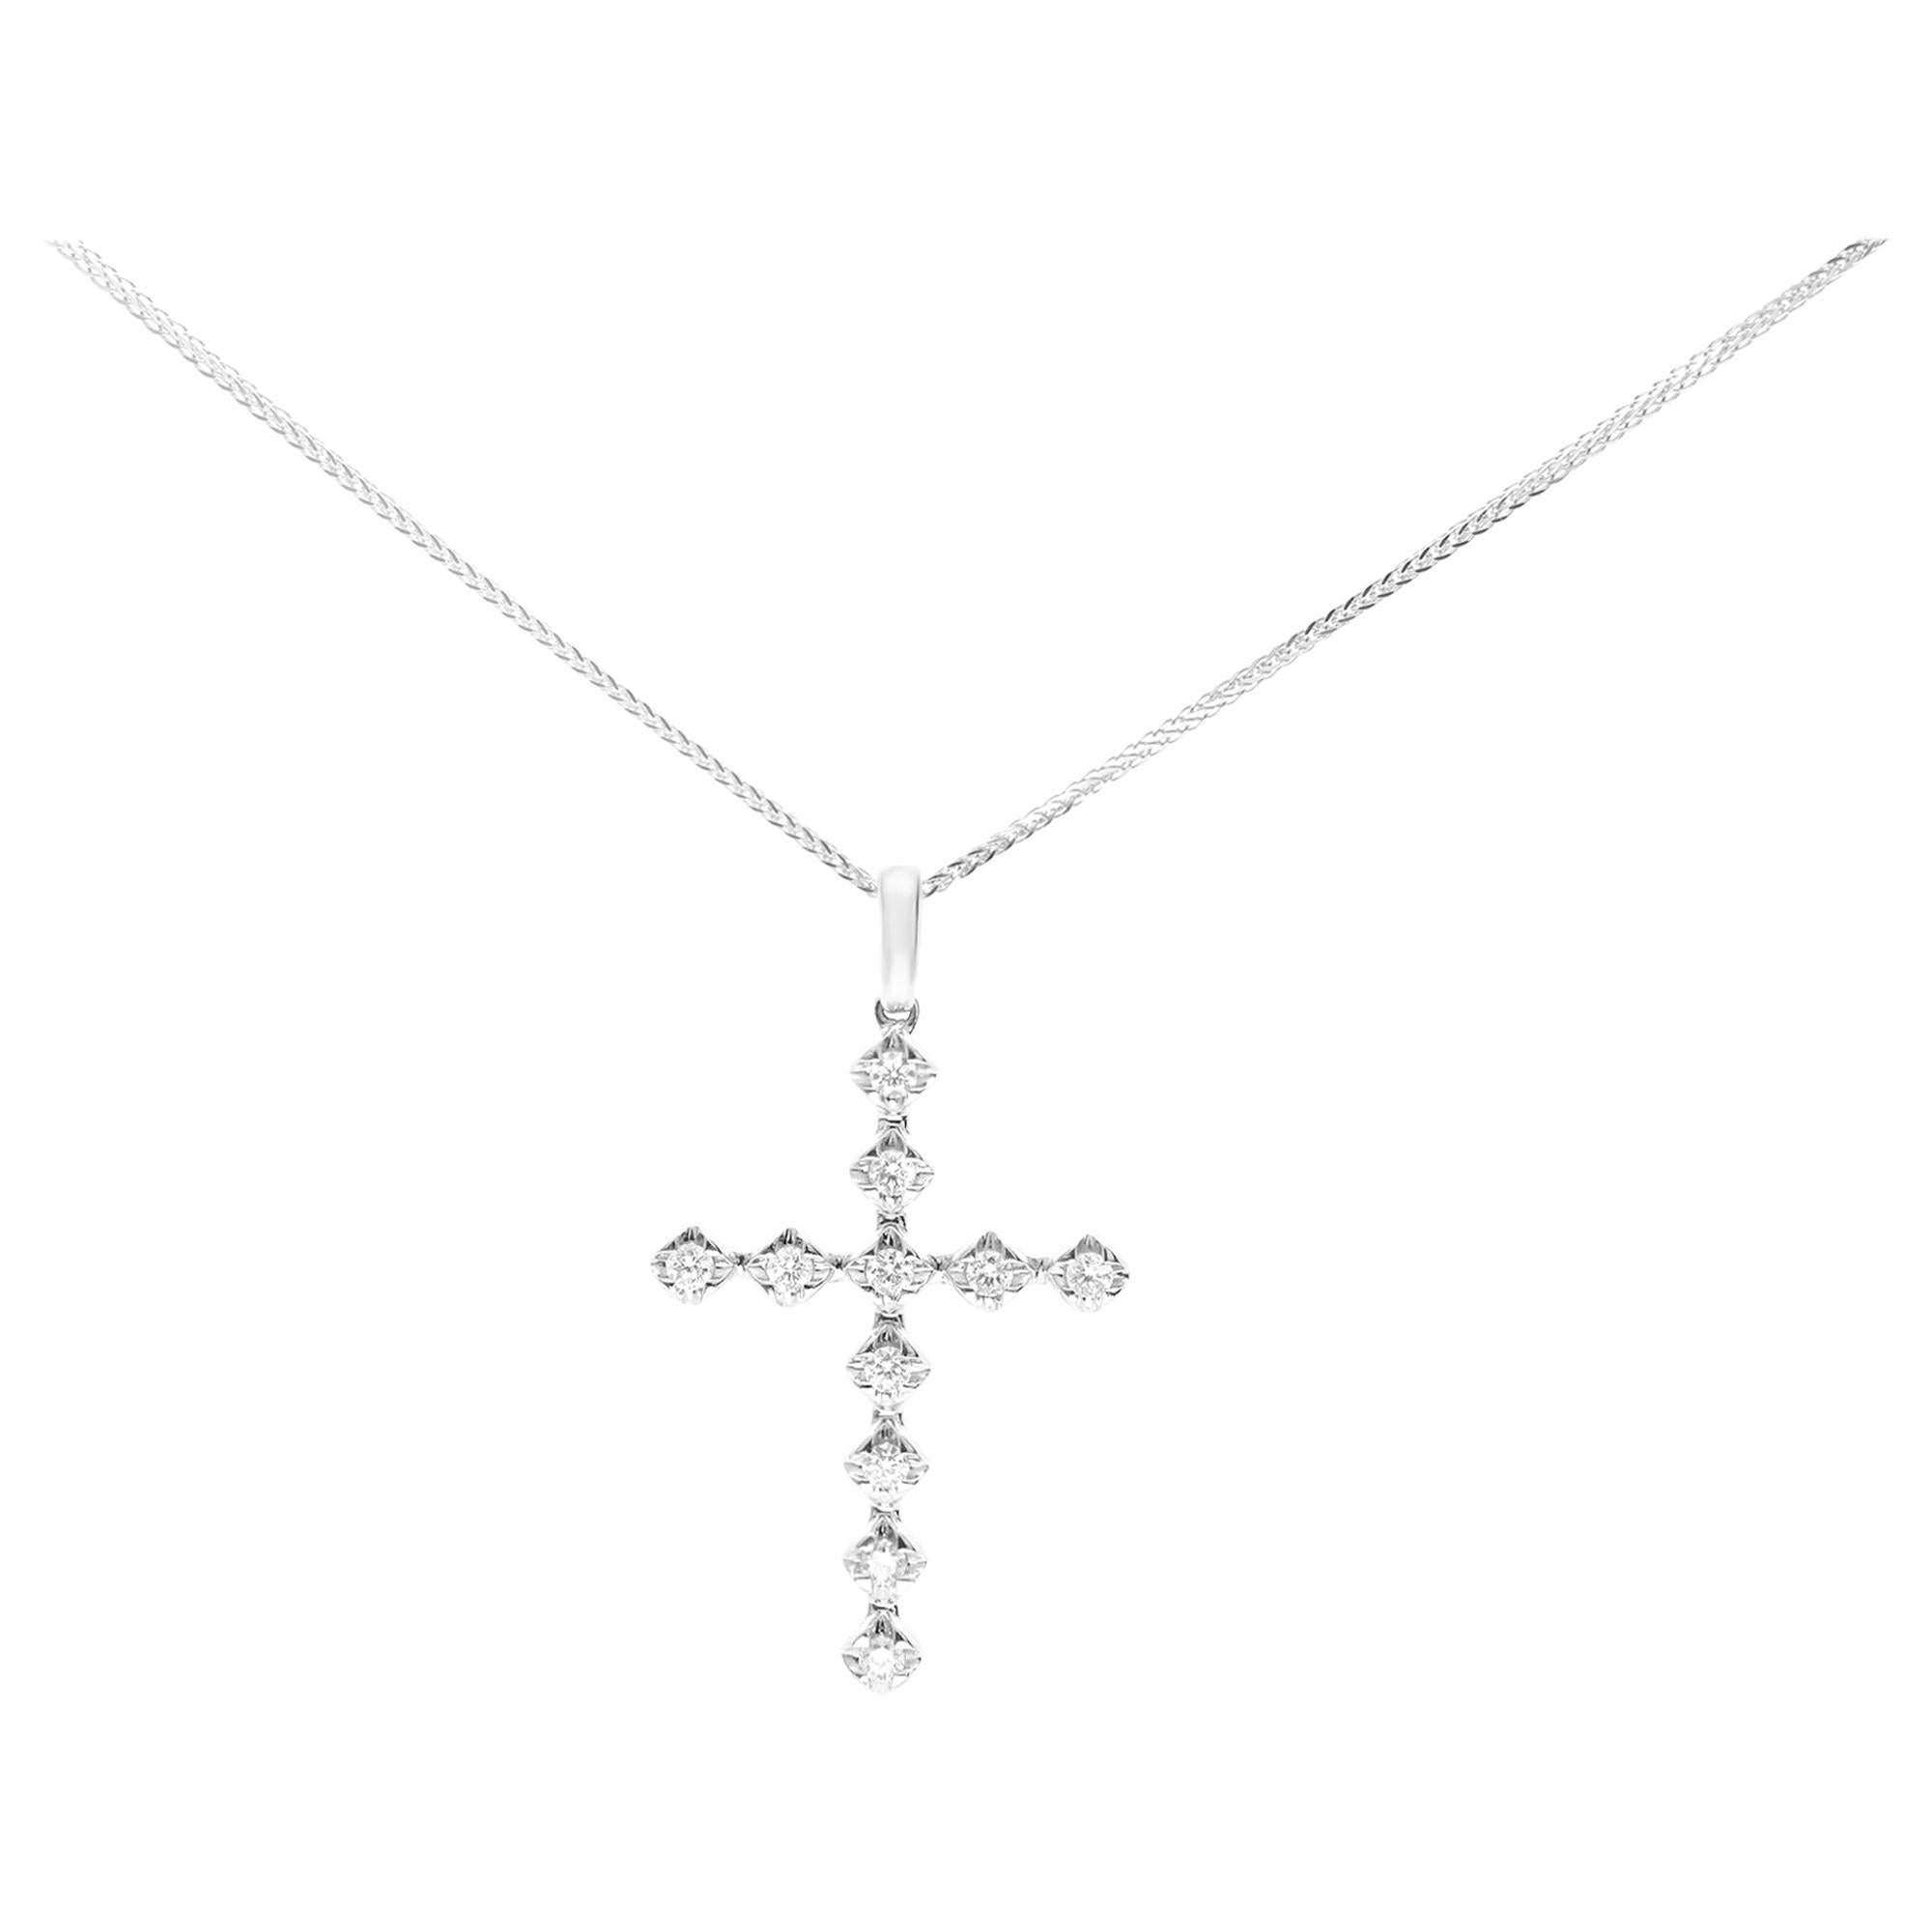 Rachel Koen 14k White Gold Diamond Cross Pendant 0.37cttw